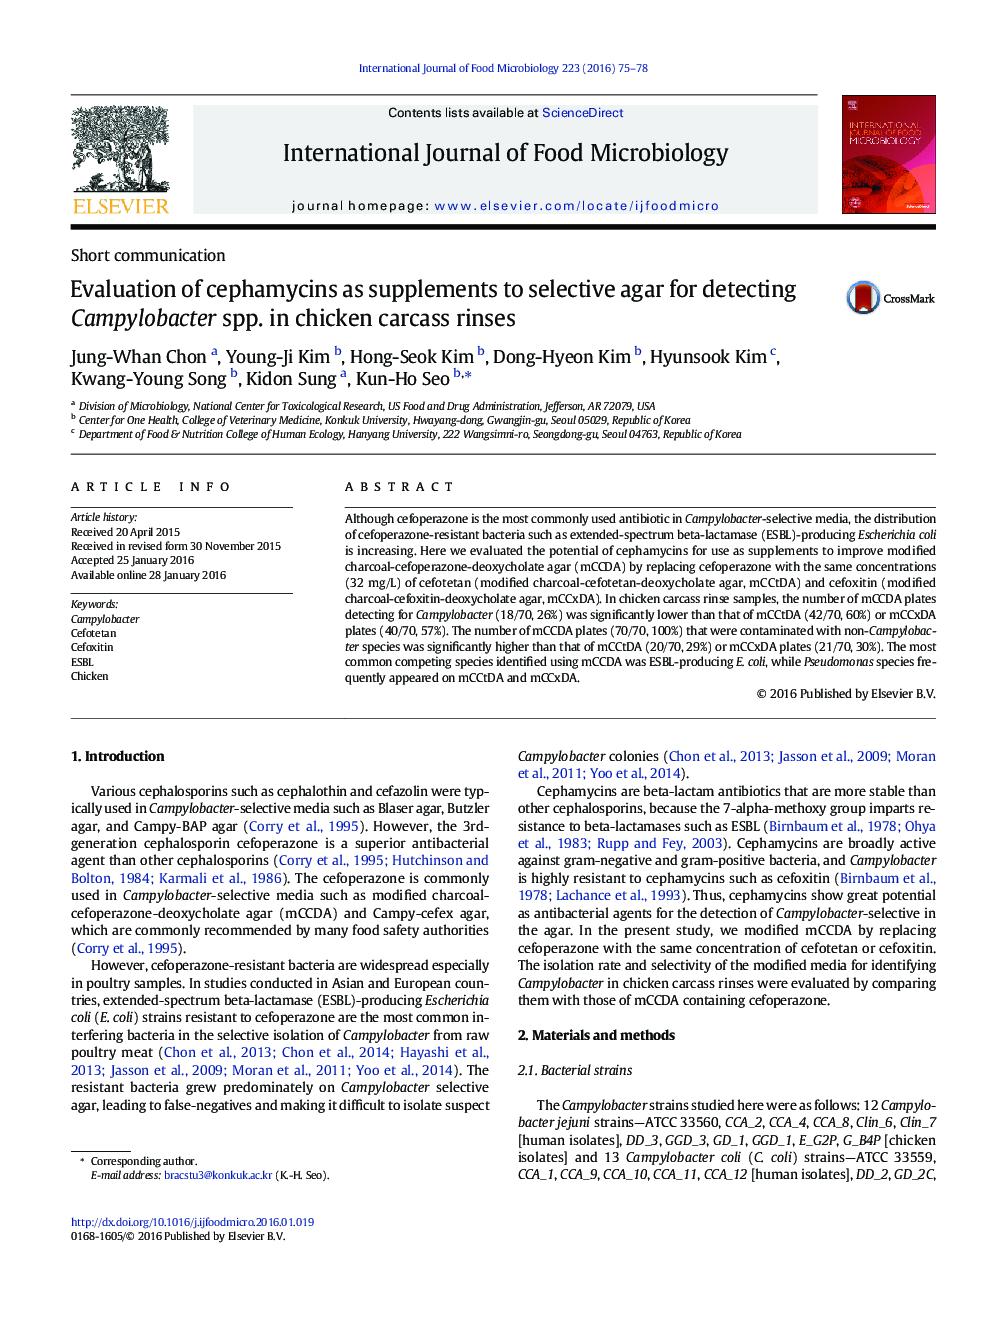 بررسی cephamycins به عنوان مکمل برای آگار انتخابی برای تشخیص کمپیلوباکتر گونههای بررسی cephamycins به عنوان مکمل به انتخابی آگار برای تشخیص Campylobacter spp. در شستشوی لاشه مرغ  